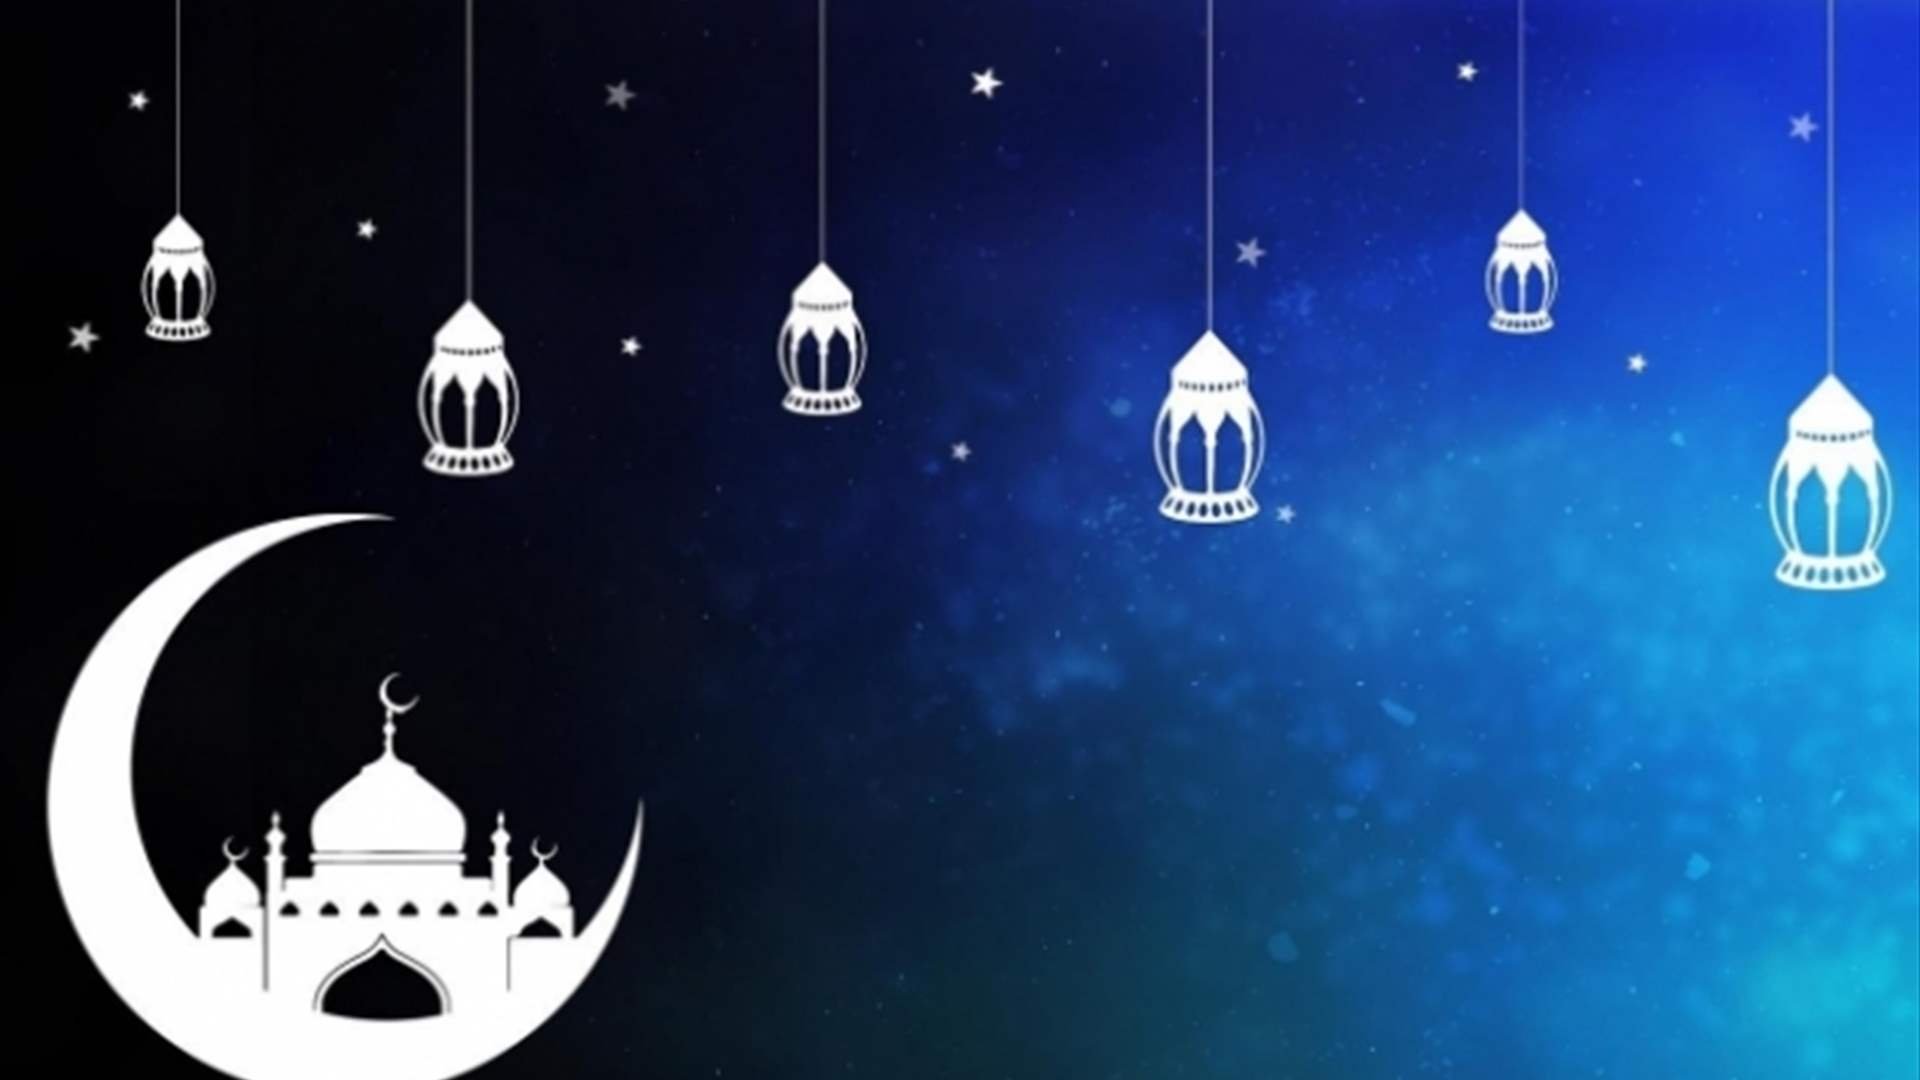 مكتب فضل الله: الخميس 23 اذار أوّل أيام شهر رمضان المبارك